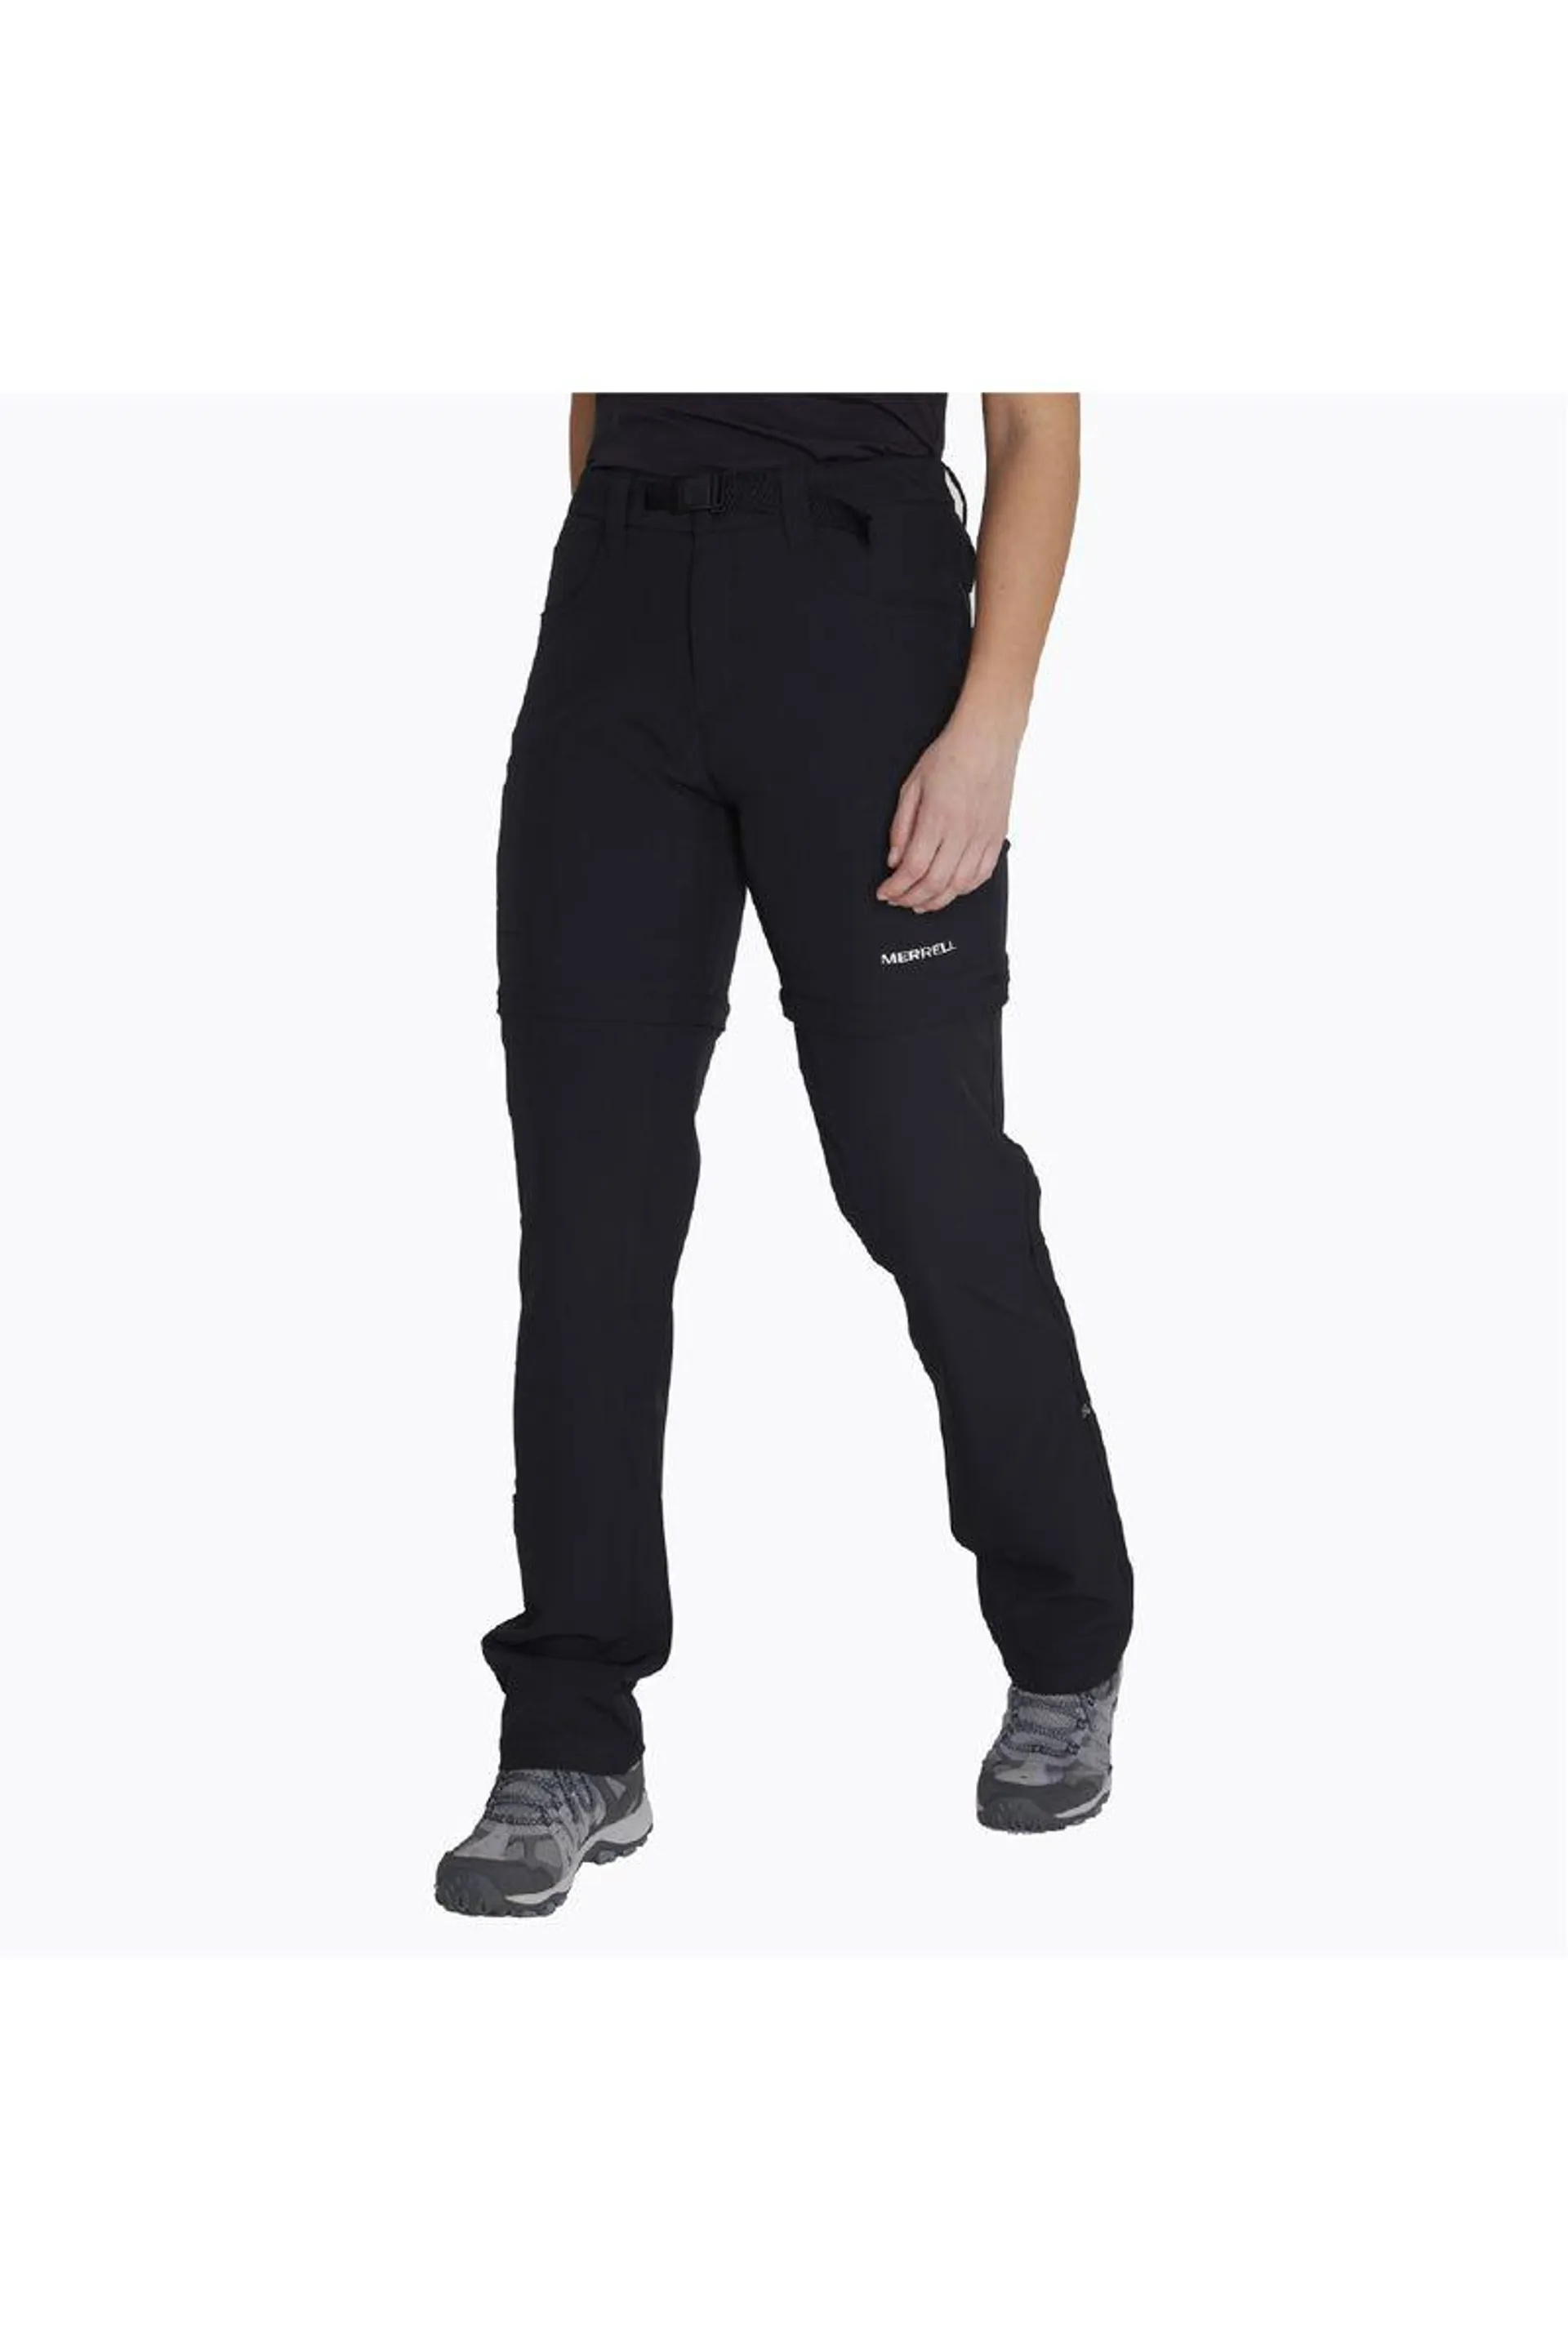 Pantalon Convertible Outdoor 4 Way Spandex Pants Para Mujer